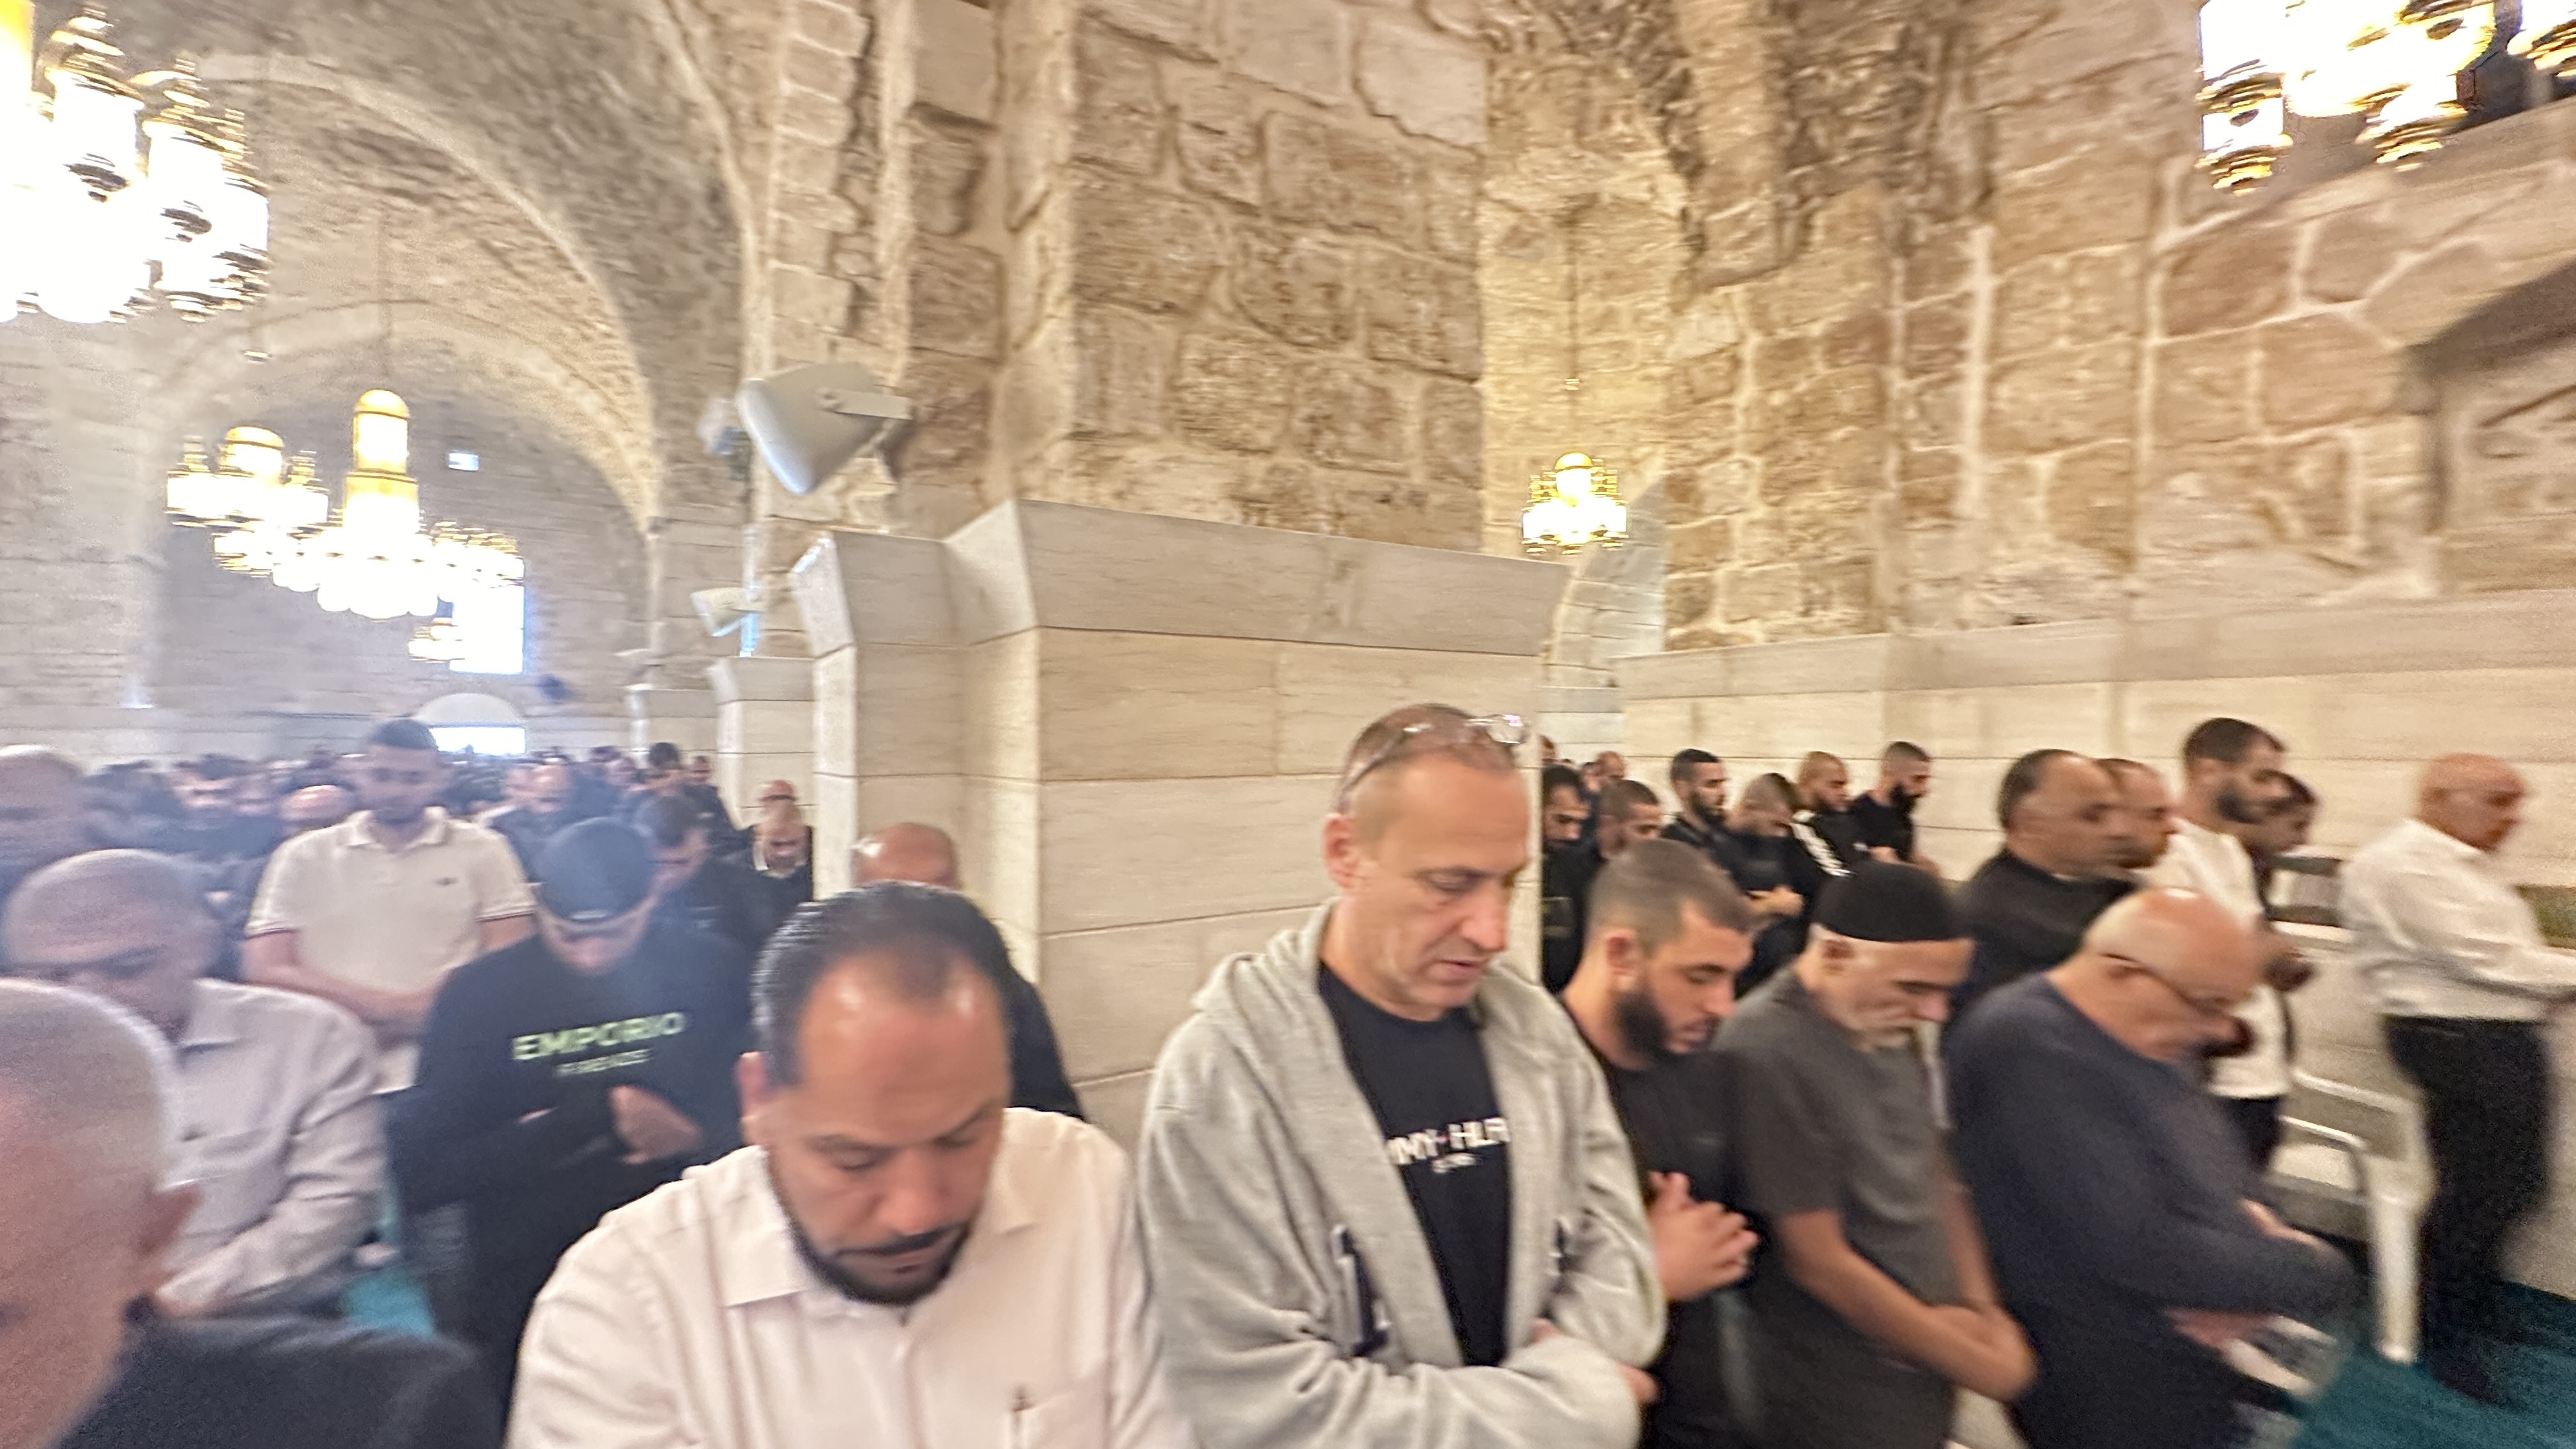 إقامة صلاة الغائب على أرواح شهداء غزة في مسجد العمري باللد